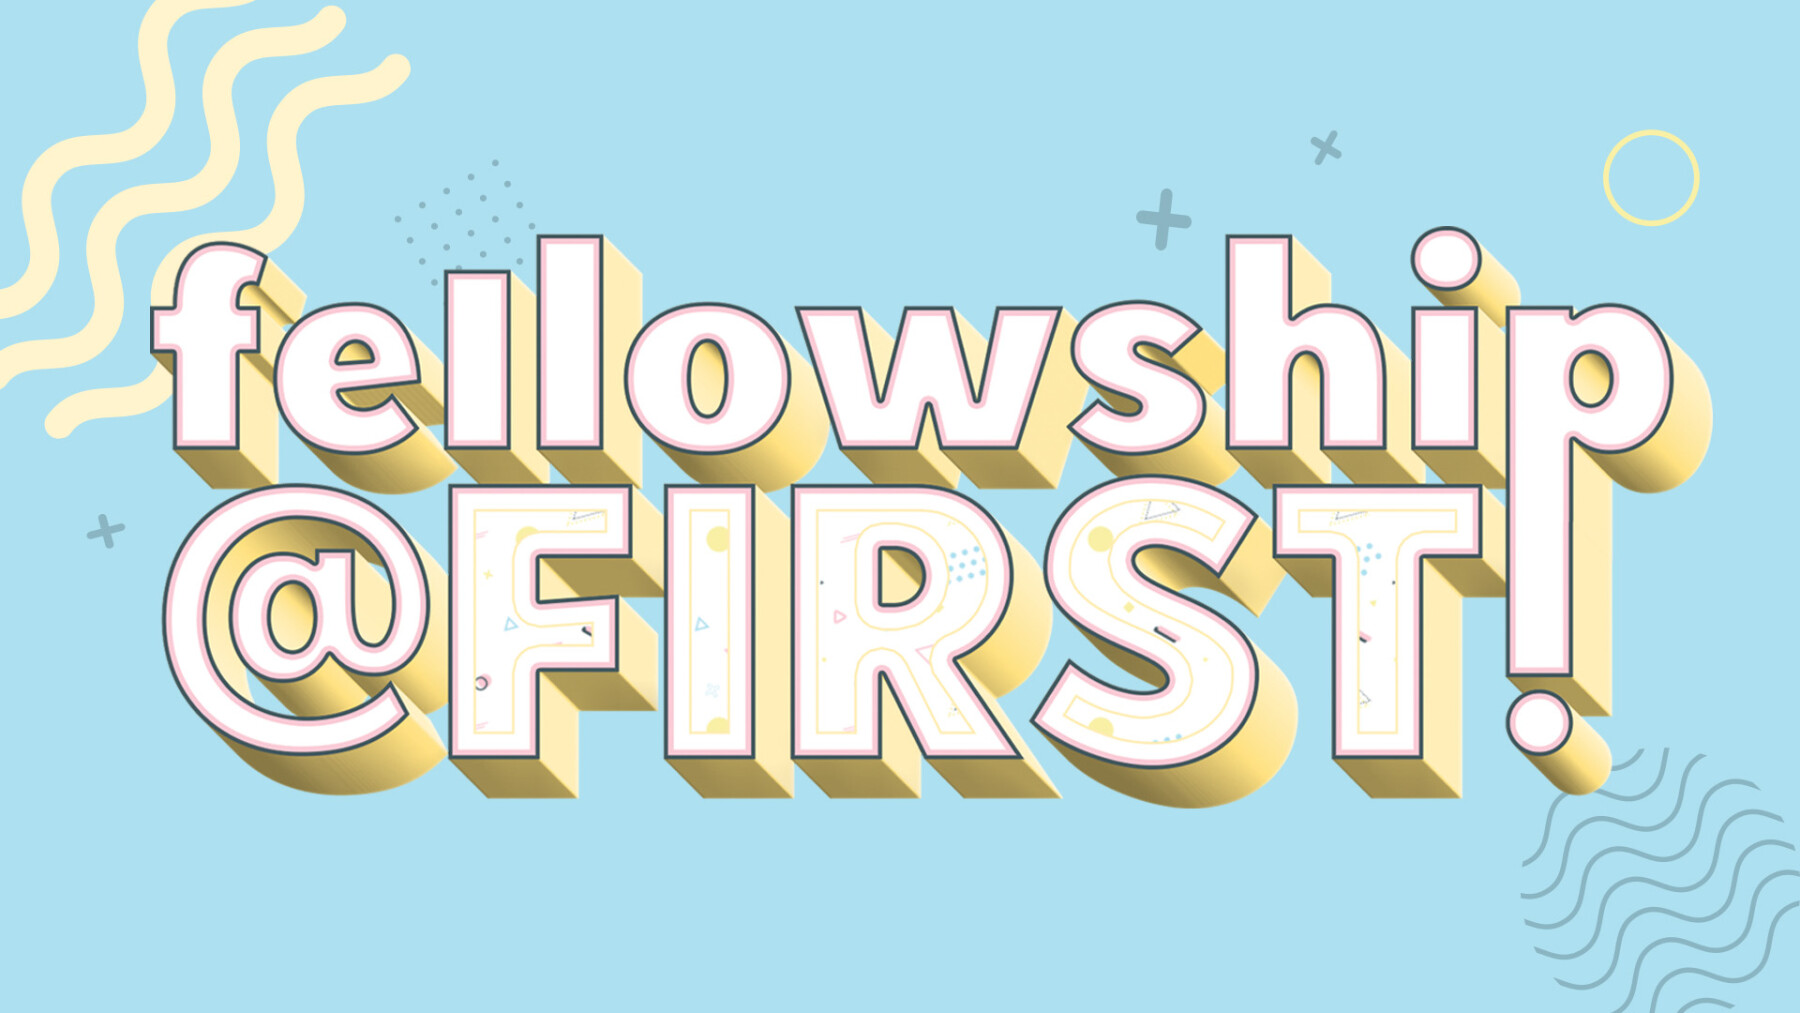 Fellowship@First Potluck and Fun